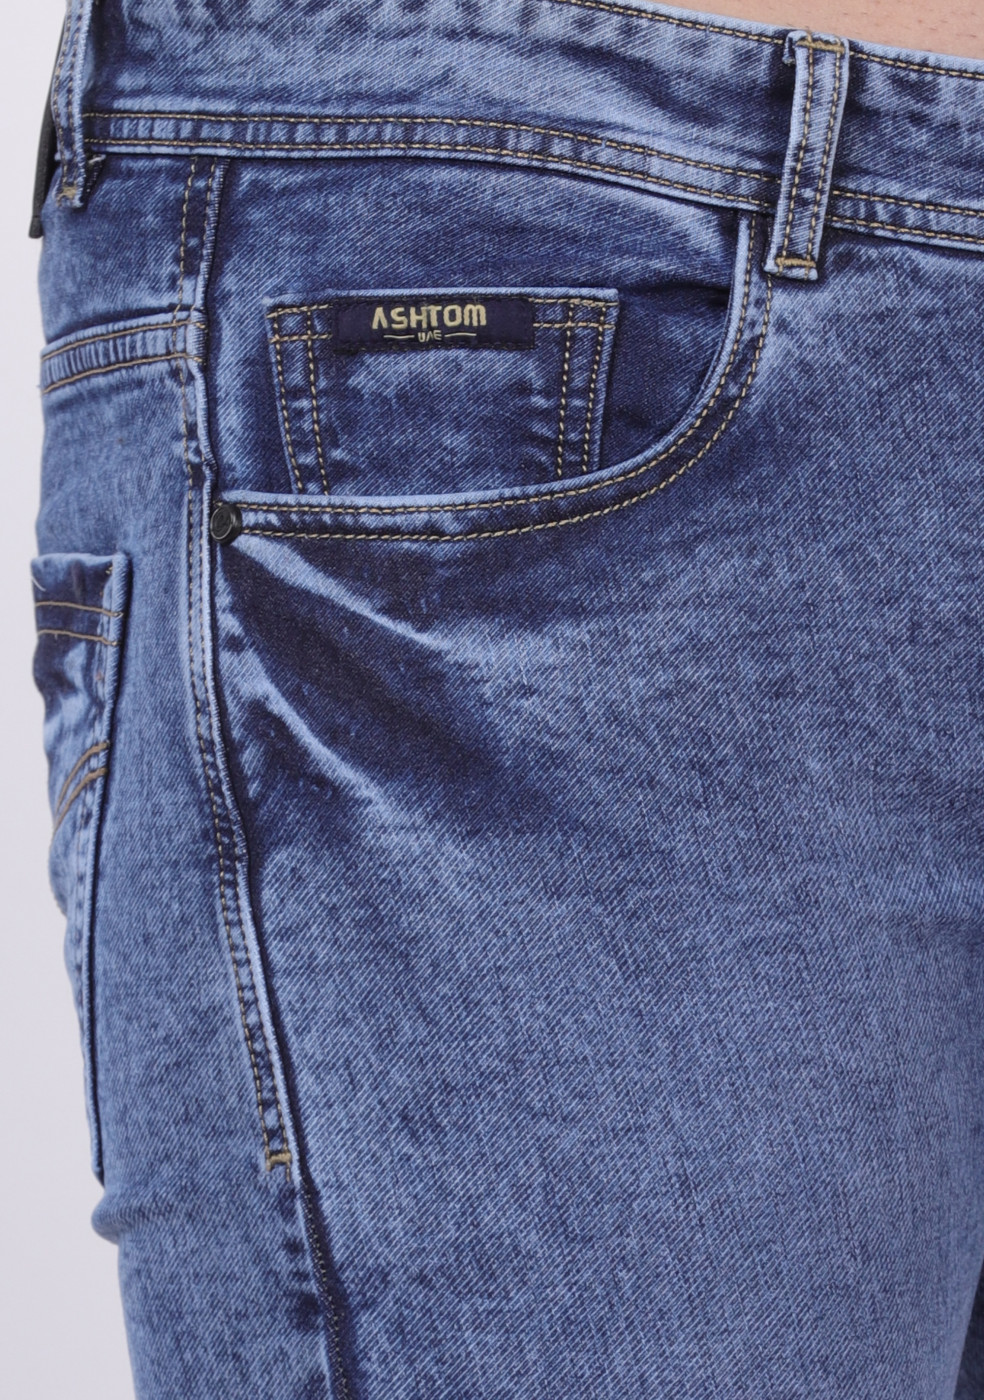 Light Blue Stretchable Cotton Jeans For Men